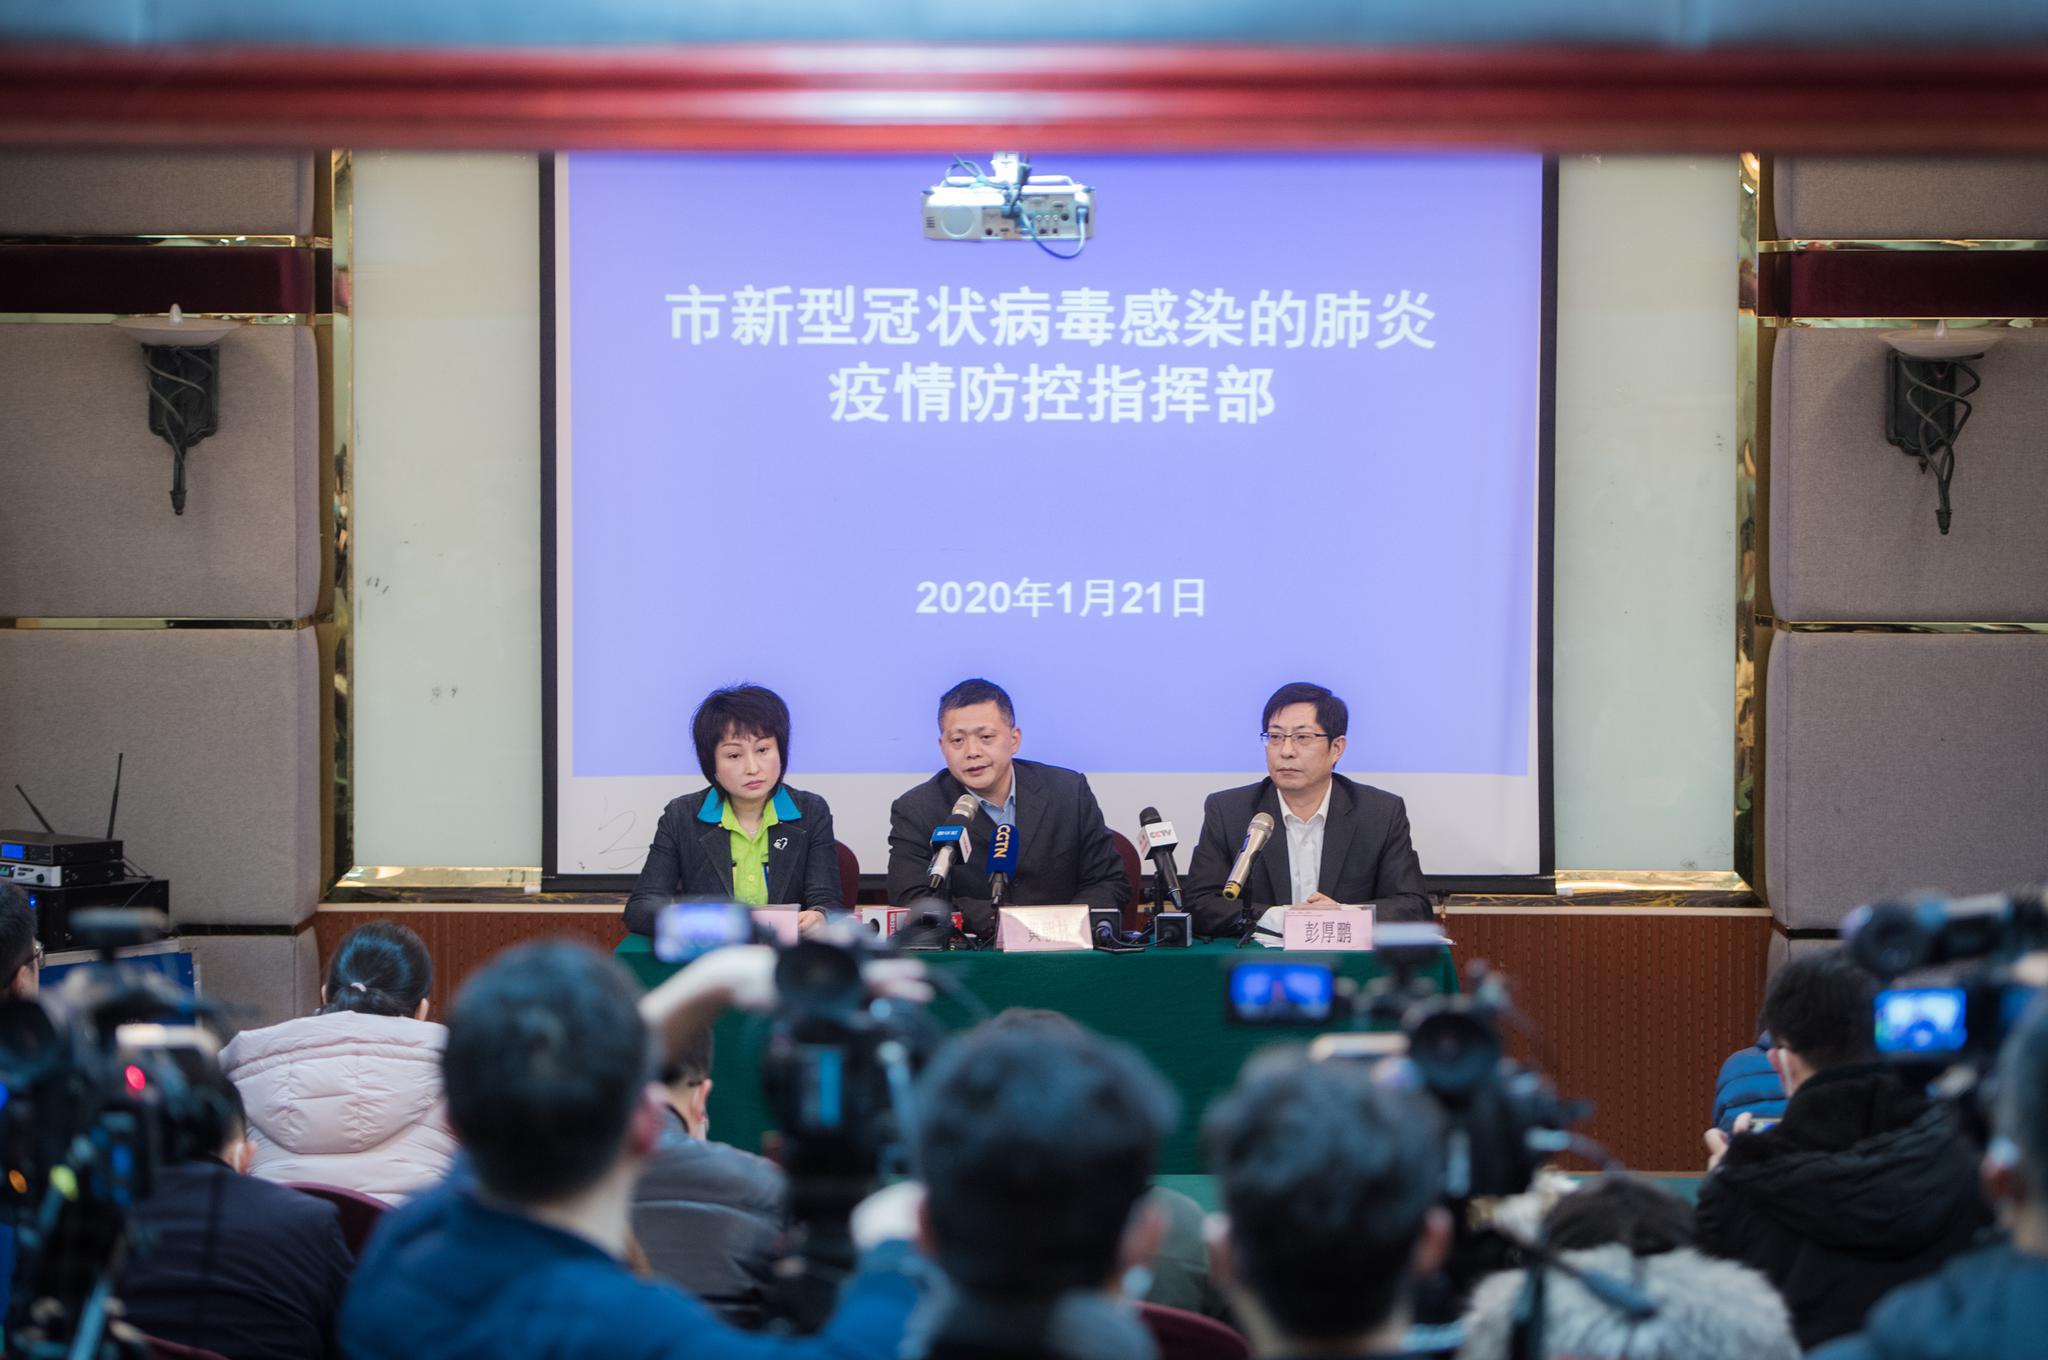  1月21日，武汉市新型冠状病毒感染的肺炎疫情防控指挥部召开新闻发布会 图片来源：新华社